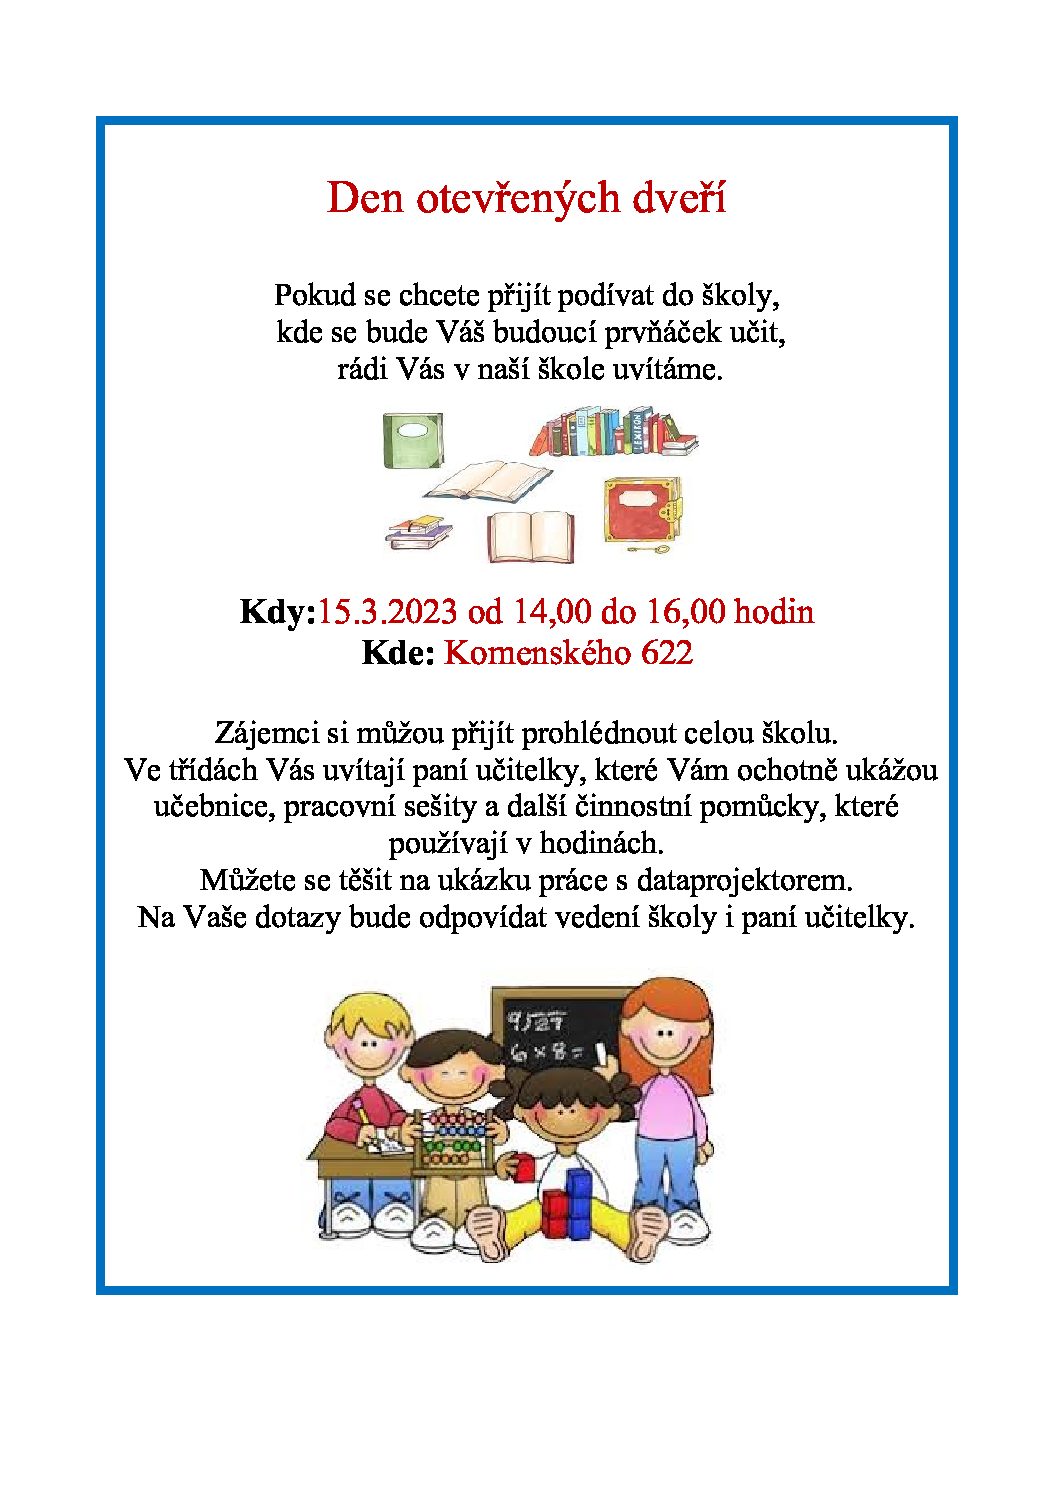 Základní škola v Unhošti – Den otevřených dveří 15.3.2023